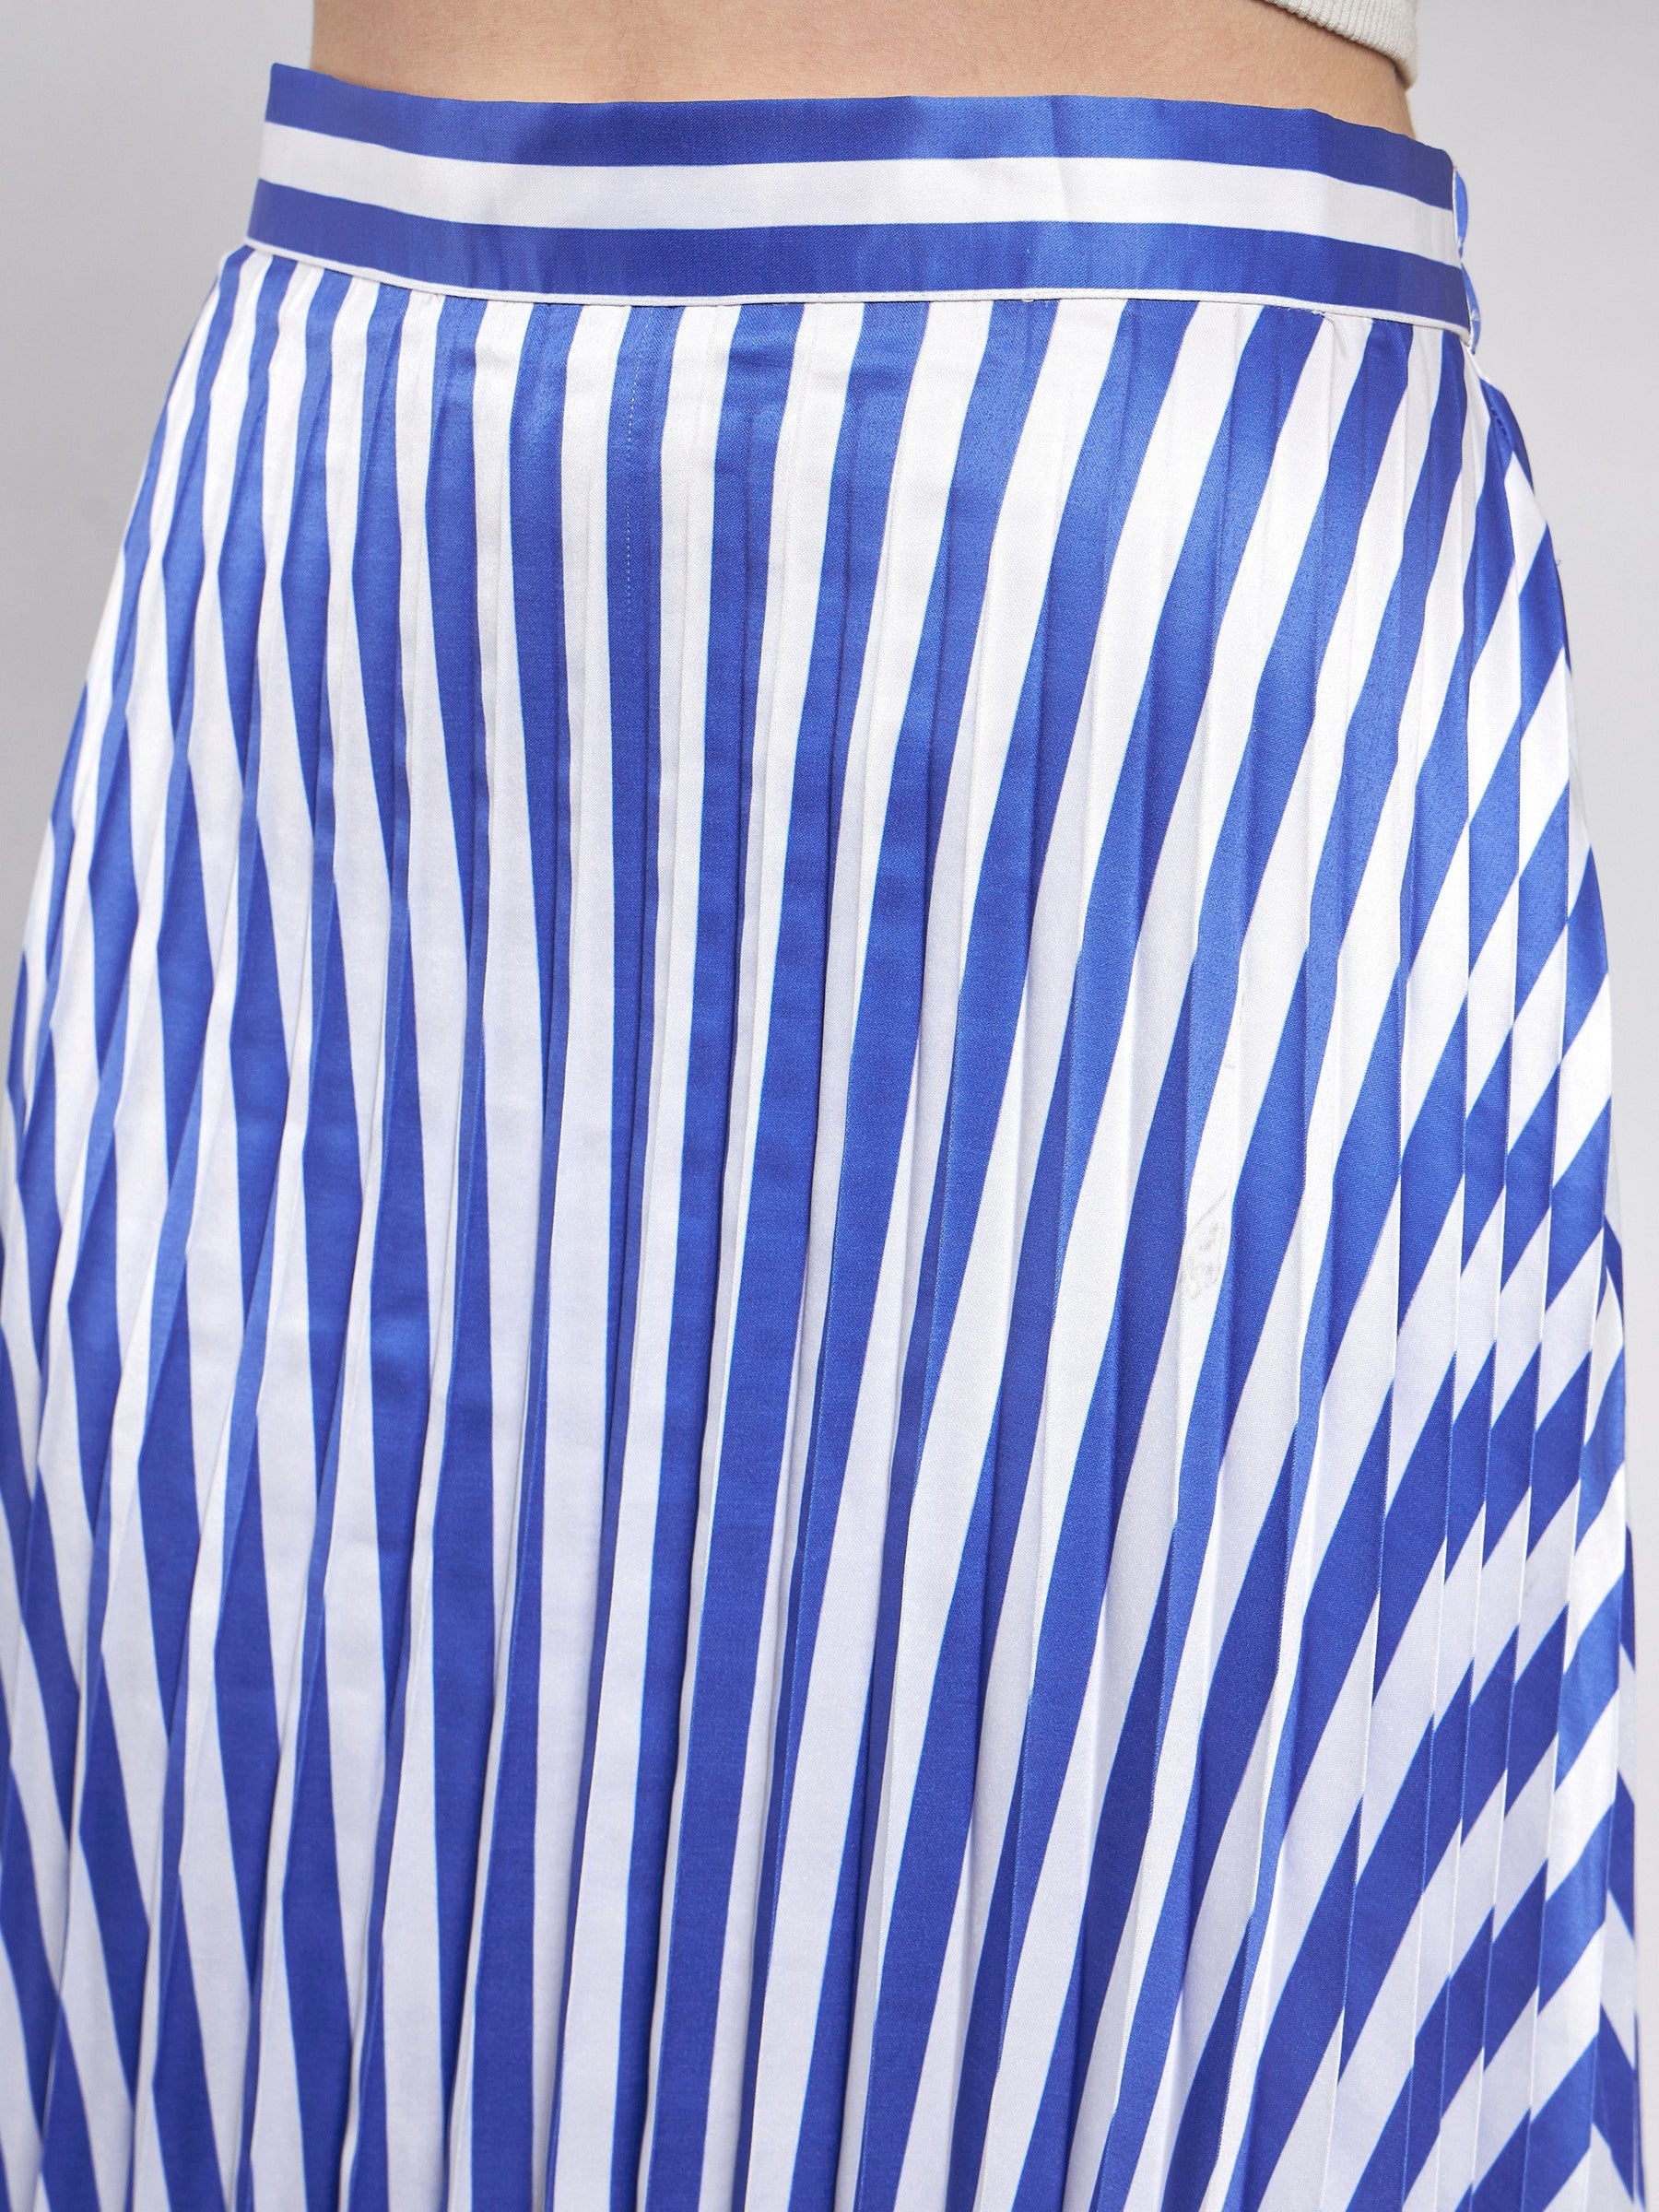 Blue & White Satin Striped Accordion Pleated Maxi Skirt -SASSAFRAS